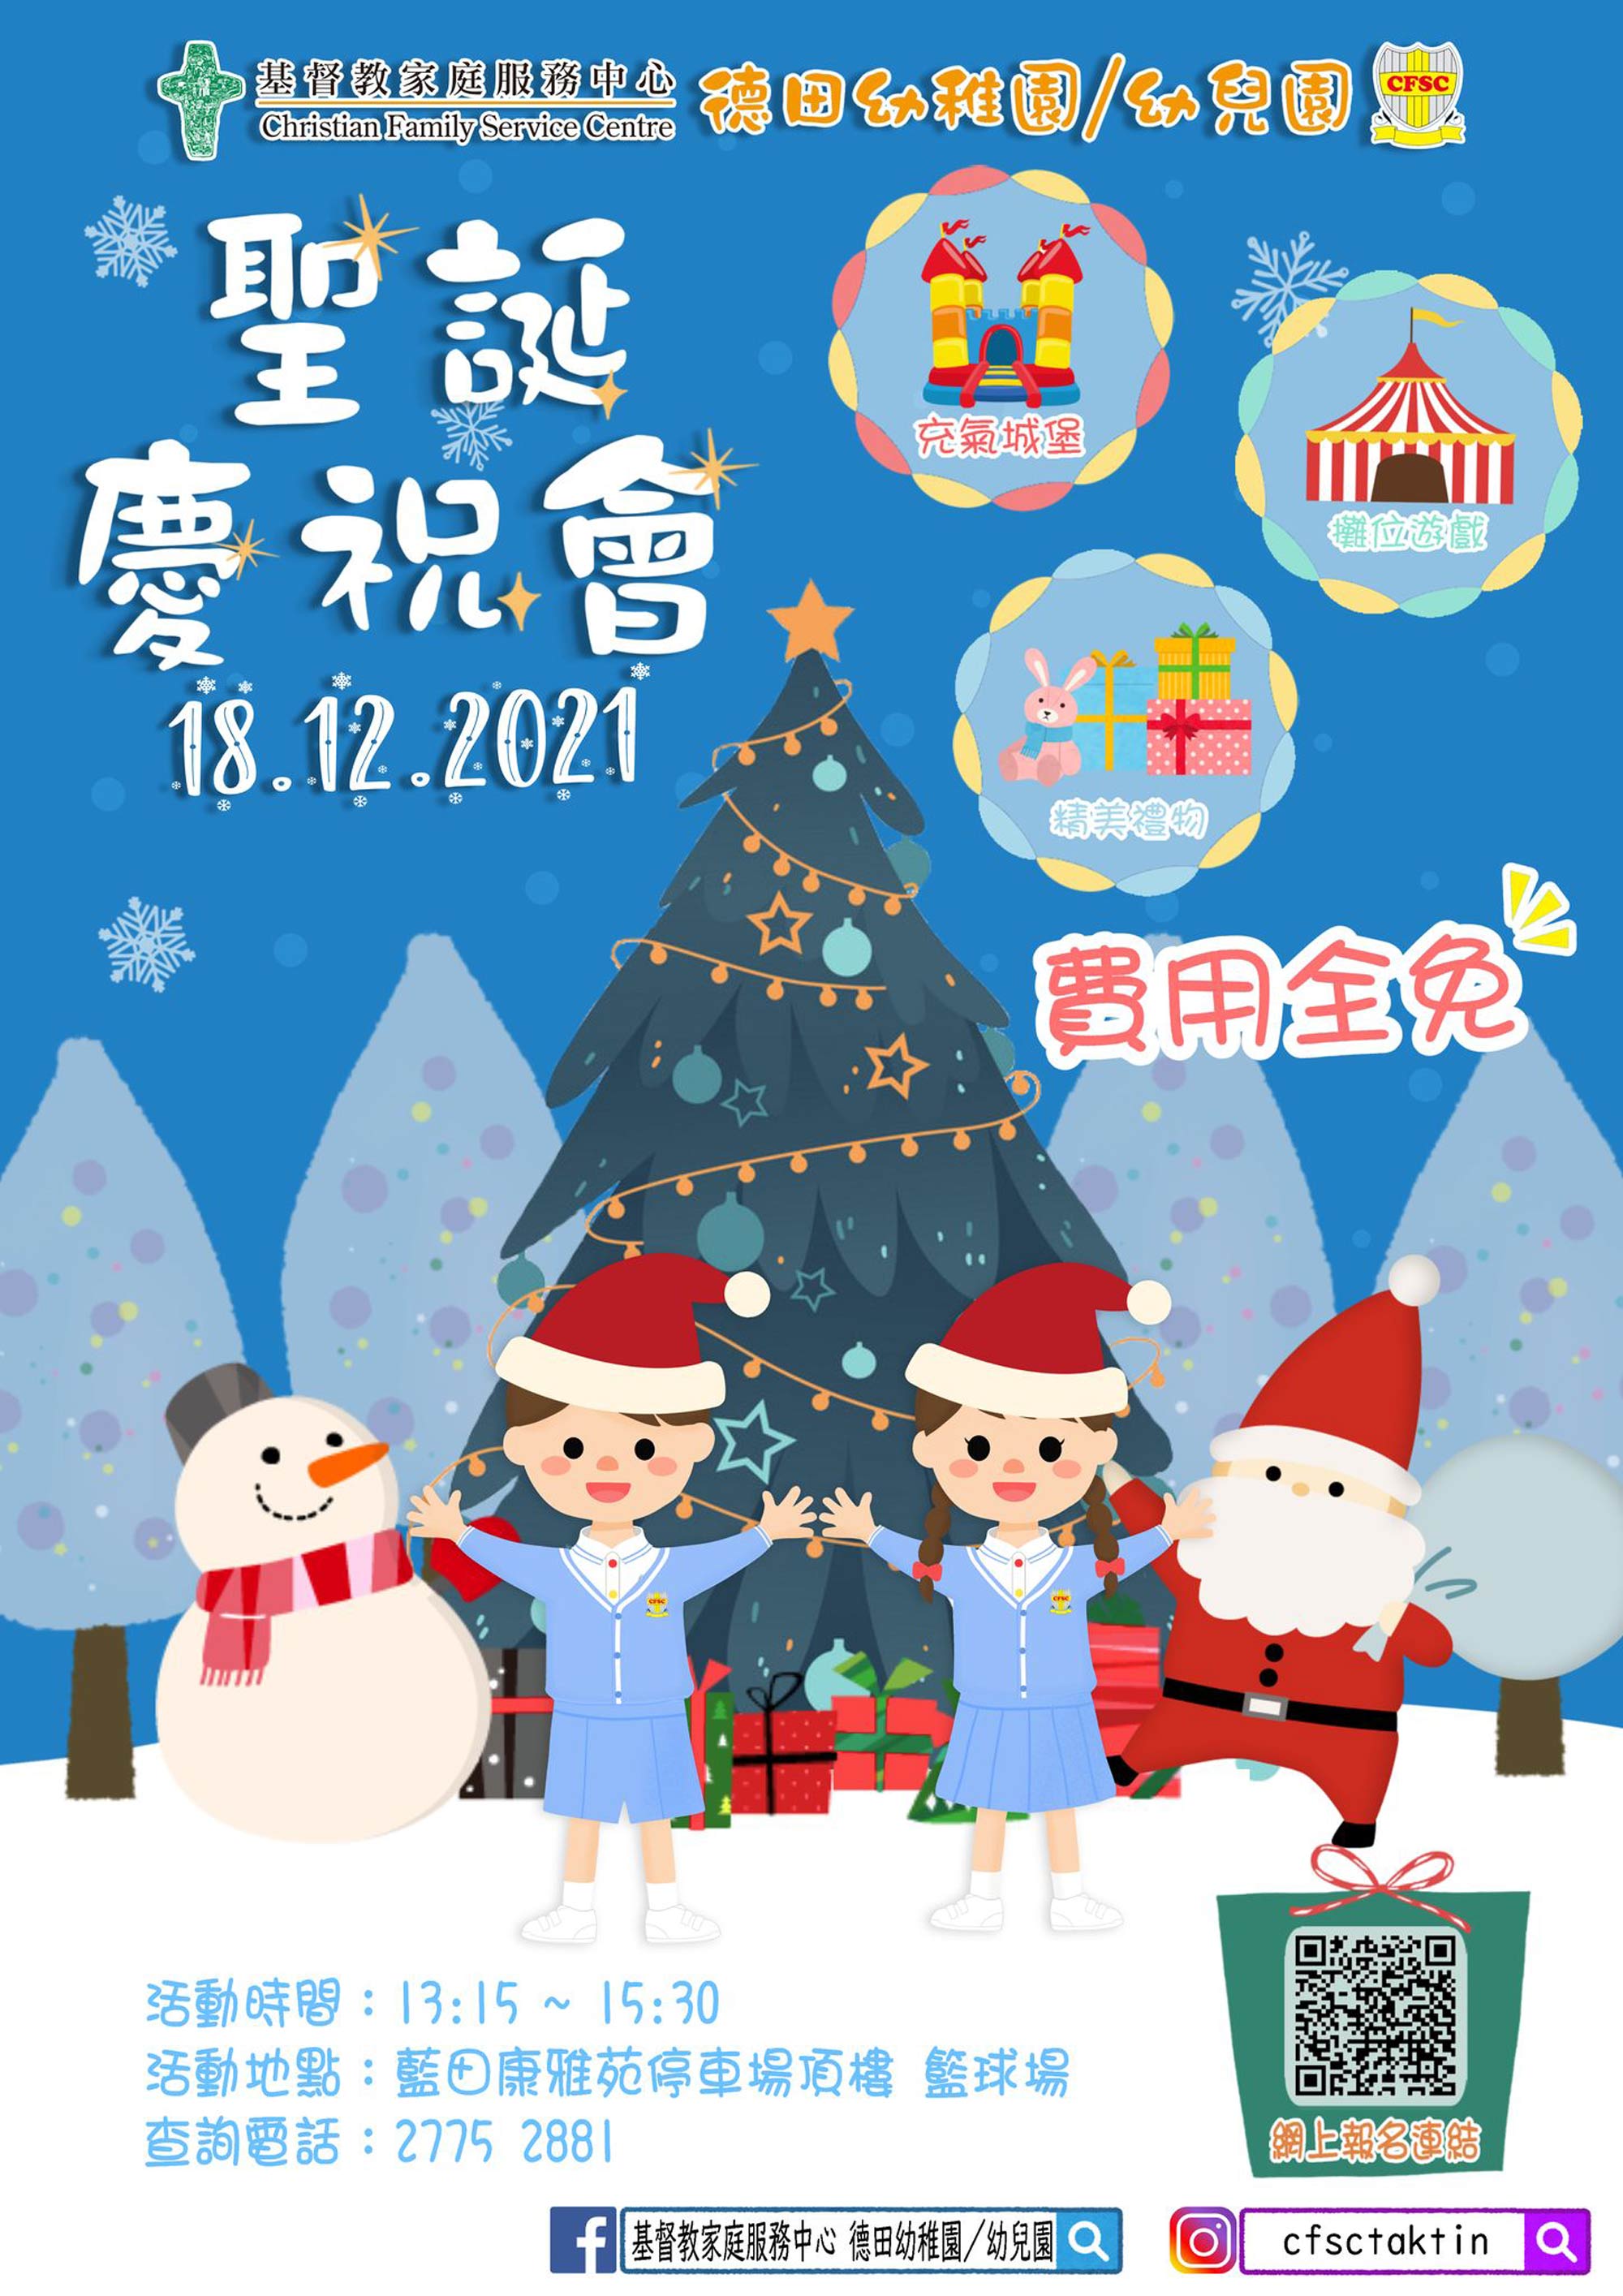 基督教家庭服務中心德田幼稚園 幼兒園 聖誕慶祝會